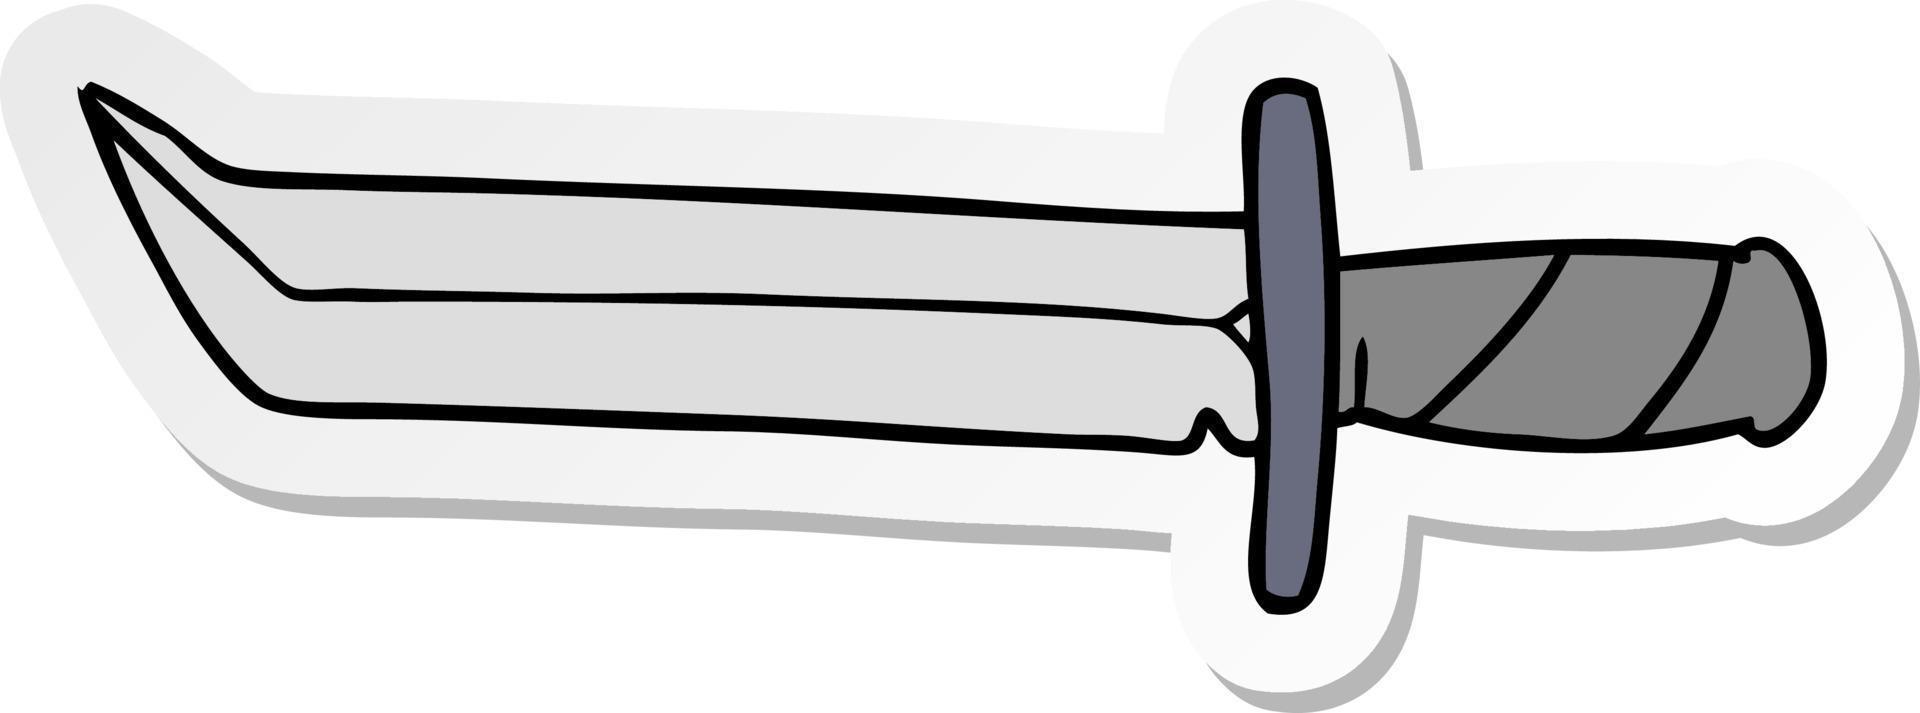 sticker cartoon doodle of a short dagger vector